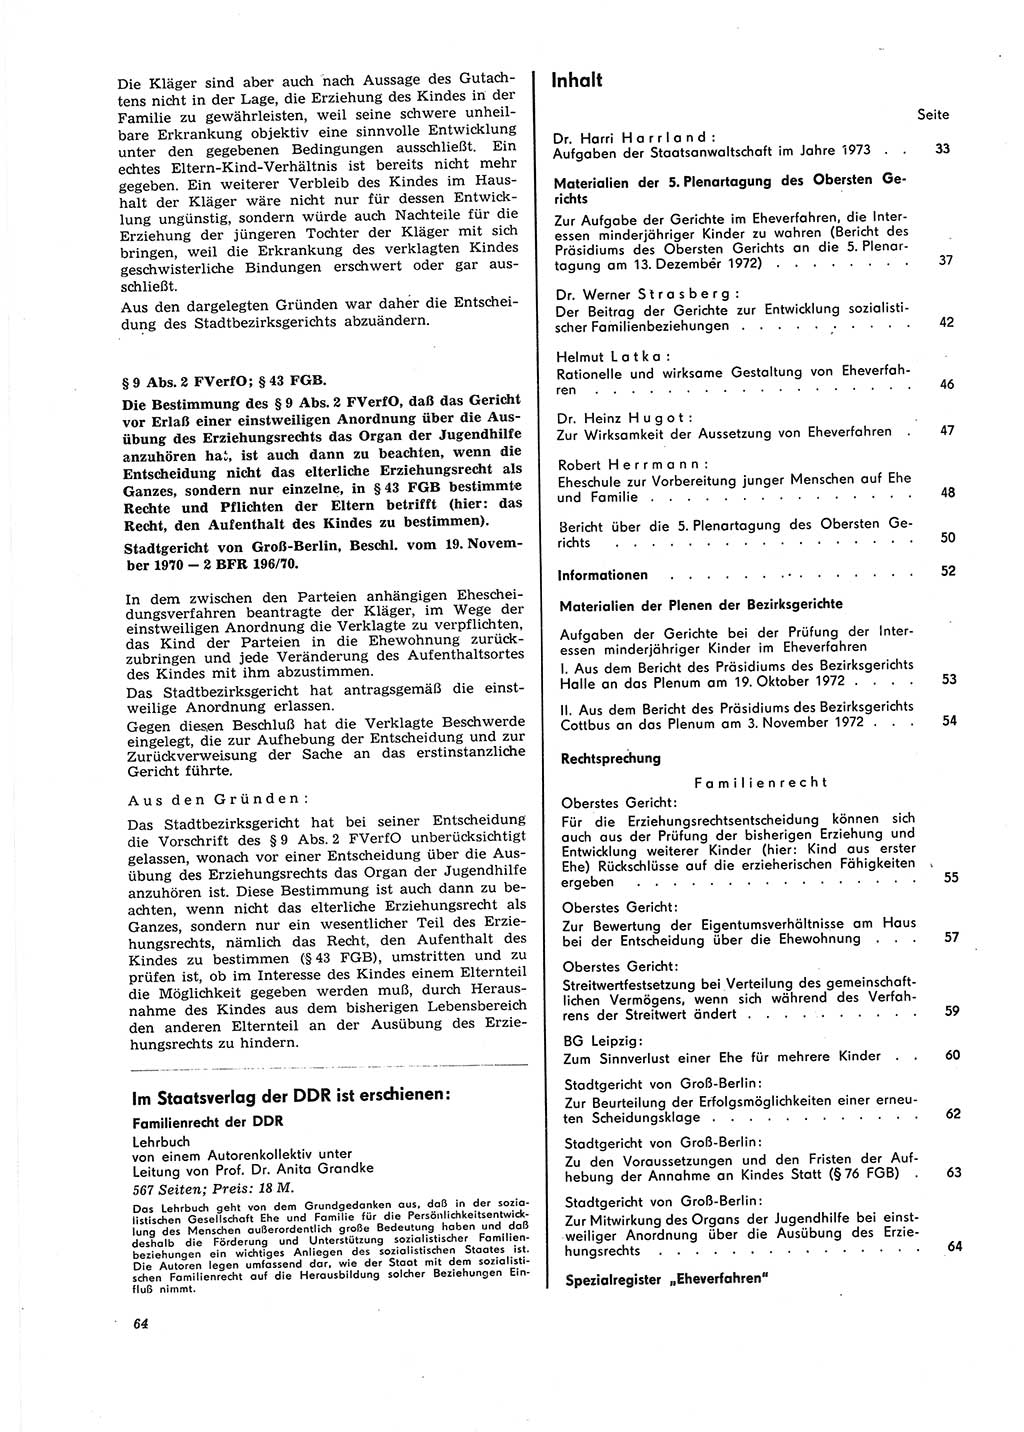 Neue Justiz (NJ), Zeitschrift für Recht und Rechtswissenschaft [Deutsche Demokratische Republik (DDR)], 27. Jahrgang 1973, Seite 64 (NJ DDR 1973, S. 64)